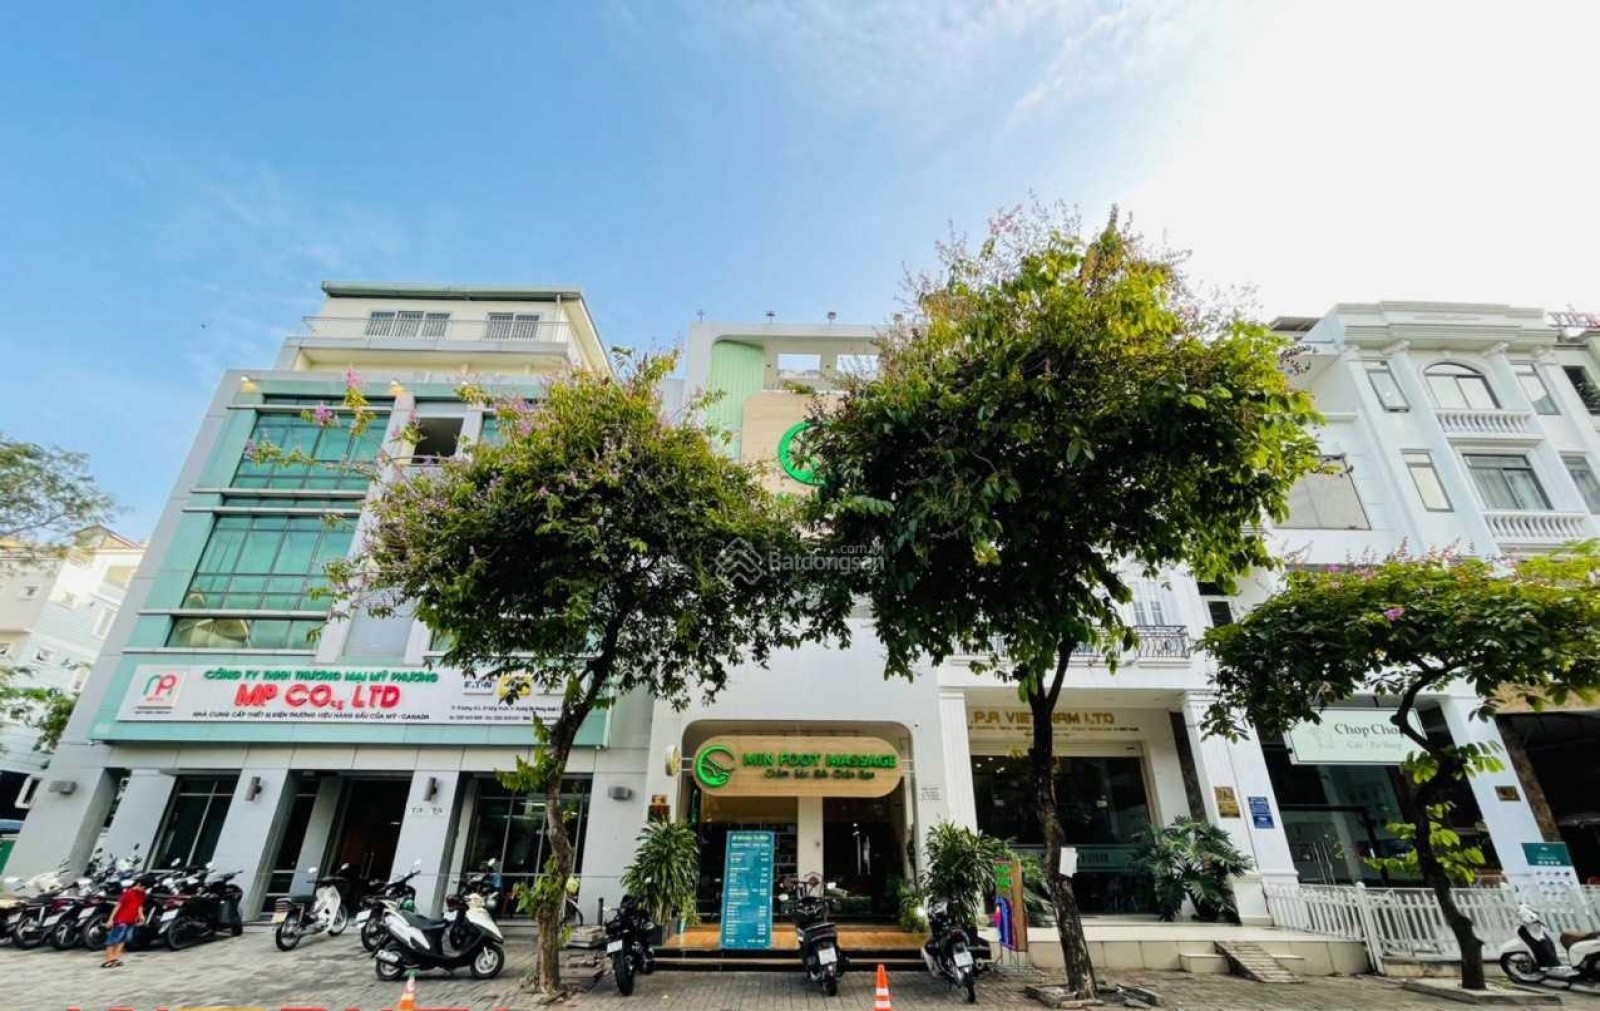 Cần bán nhà phố mặt tiền đường số 6 Phú Mỹ Hưng (6x18,5m), 4 tầng, giá 37.5 tỷ (sổ hồng). LH: 0917857039